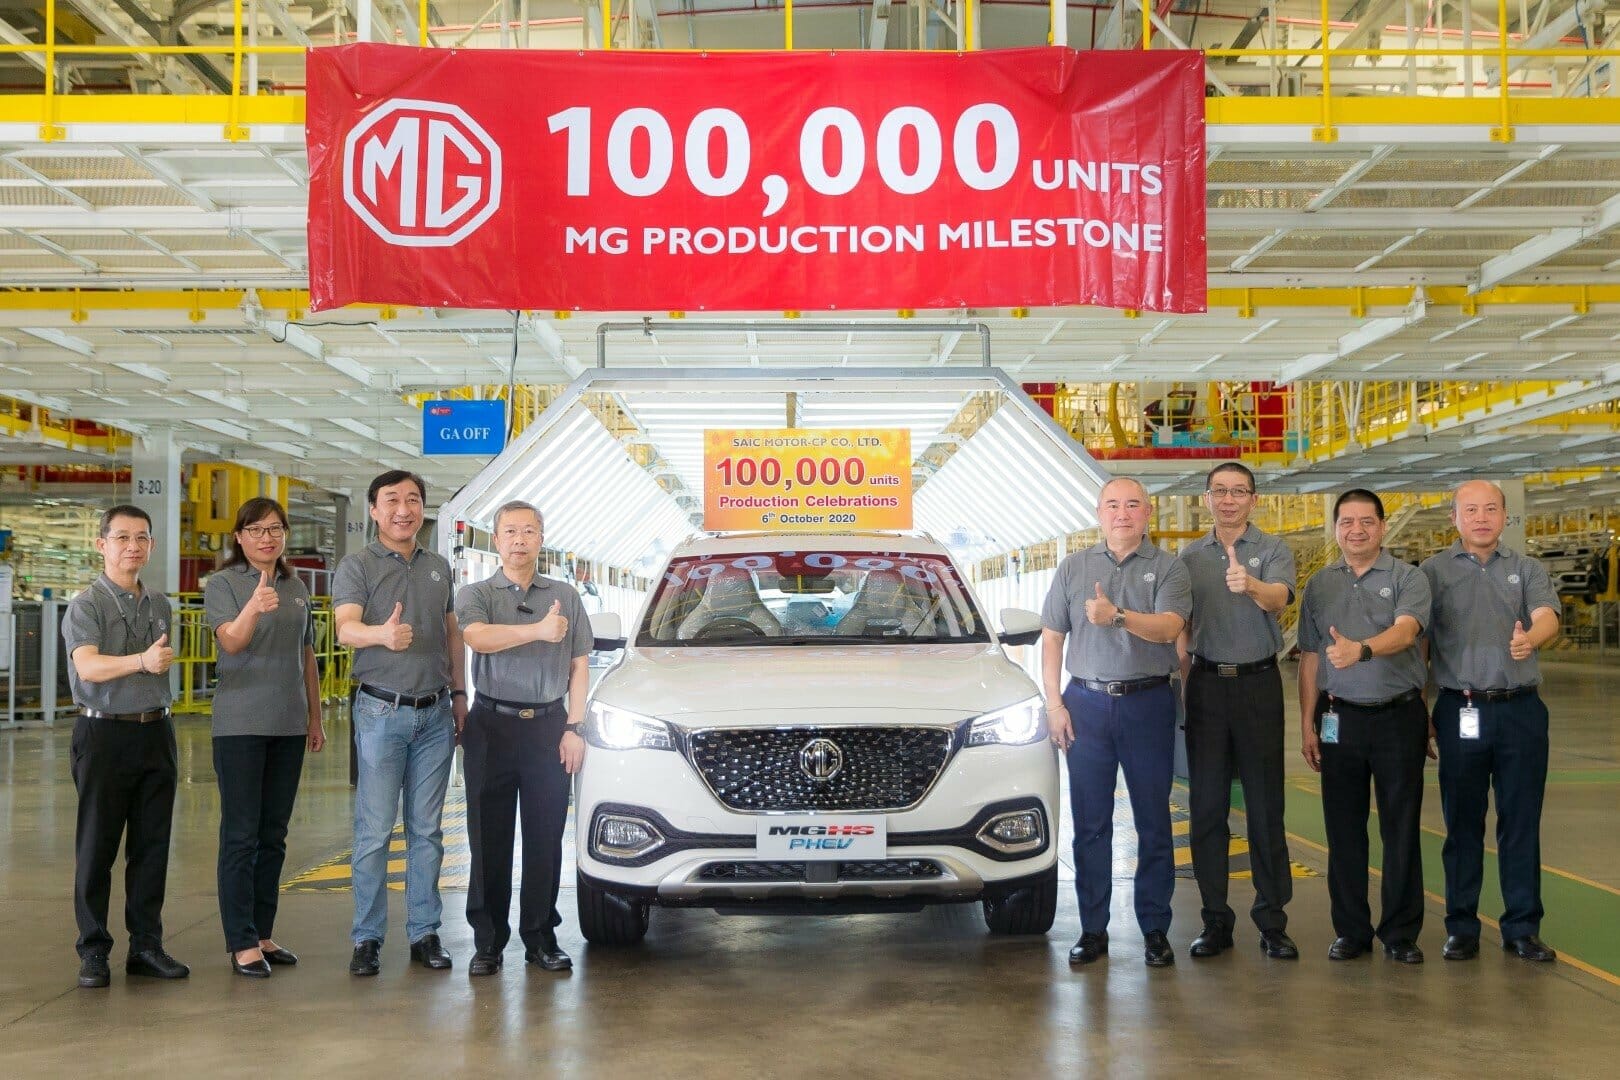 MG ฉลองยอดการผลิตรถยนต์ในประเทศไทย ครบ 100,000 คัน ตอกย้ำภาพโรงงานศูนย์กลางการผลิตรถยนต์พวงมาลัยขวาของอาเซียน 1